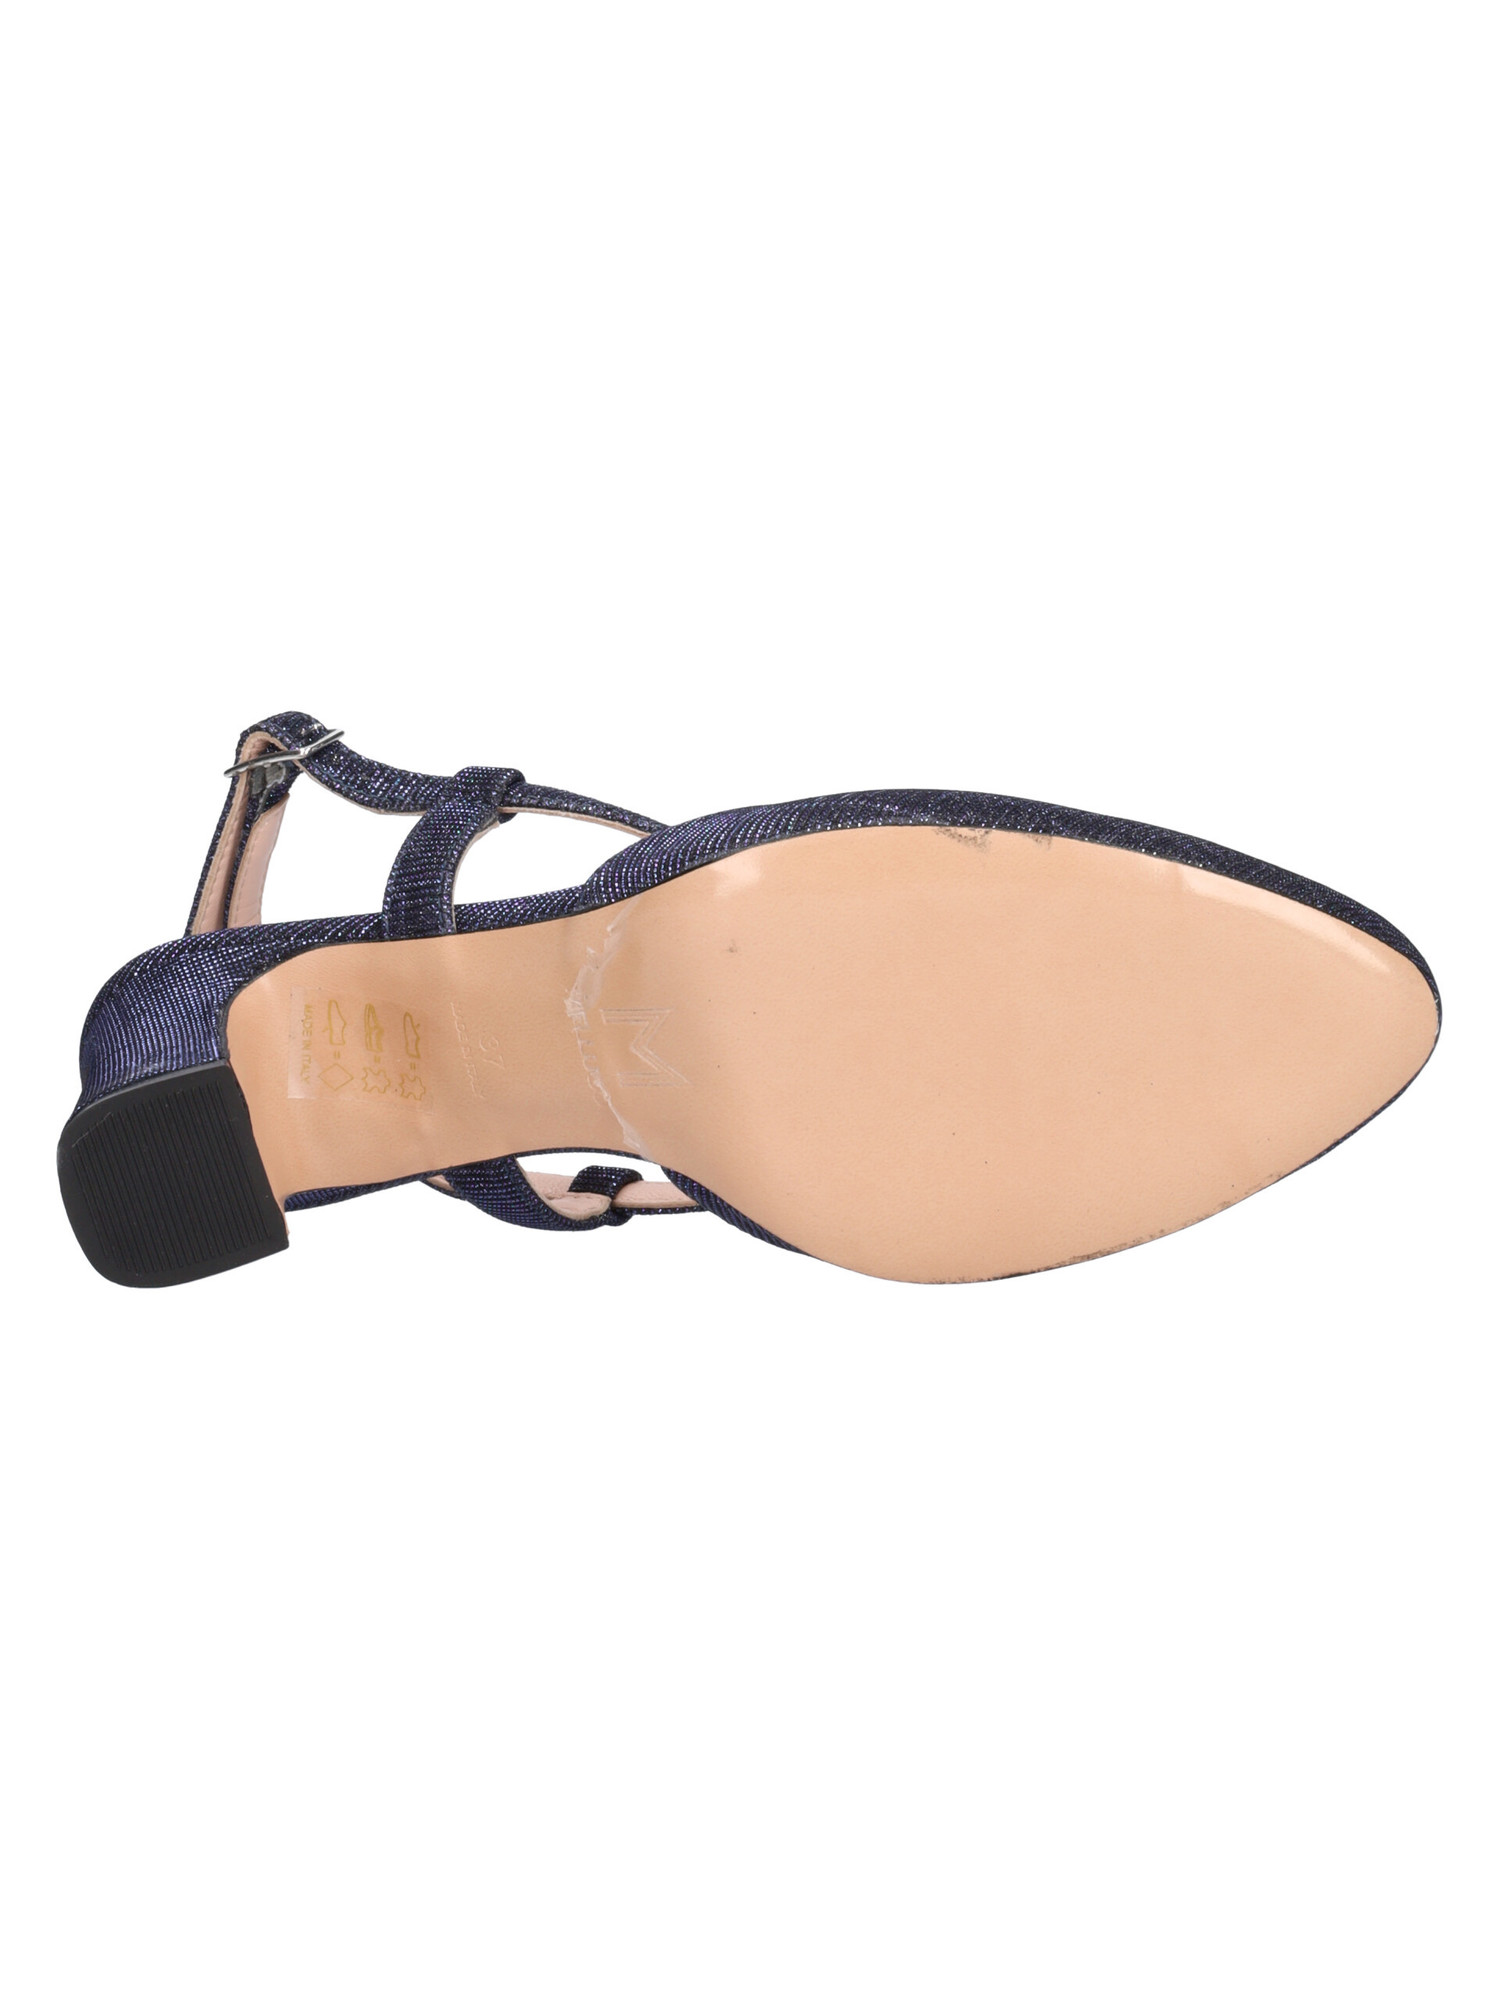 scarpa-elegante-con-tacco-largo-melluso-da-donna-blu-glitter